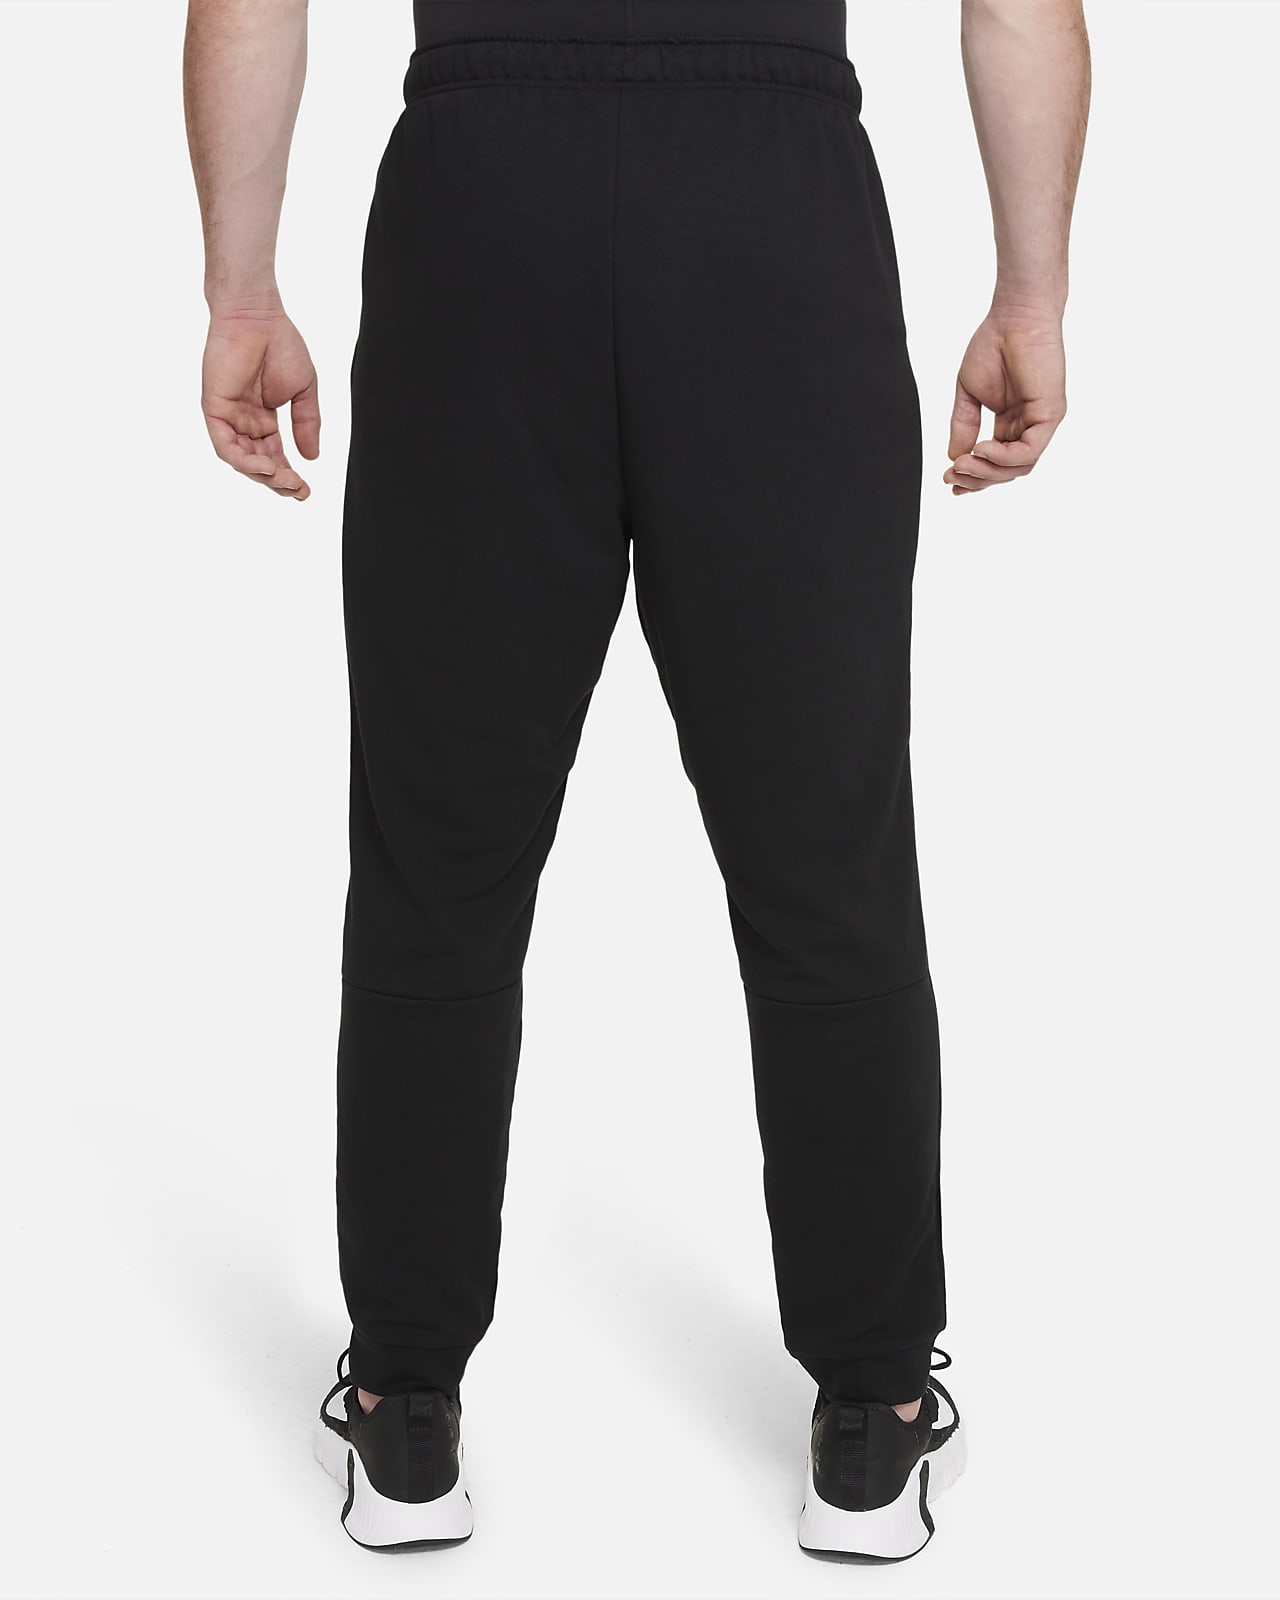 Nike Dri-FIT Men's Tapered Training Pants. Nike.com